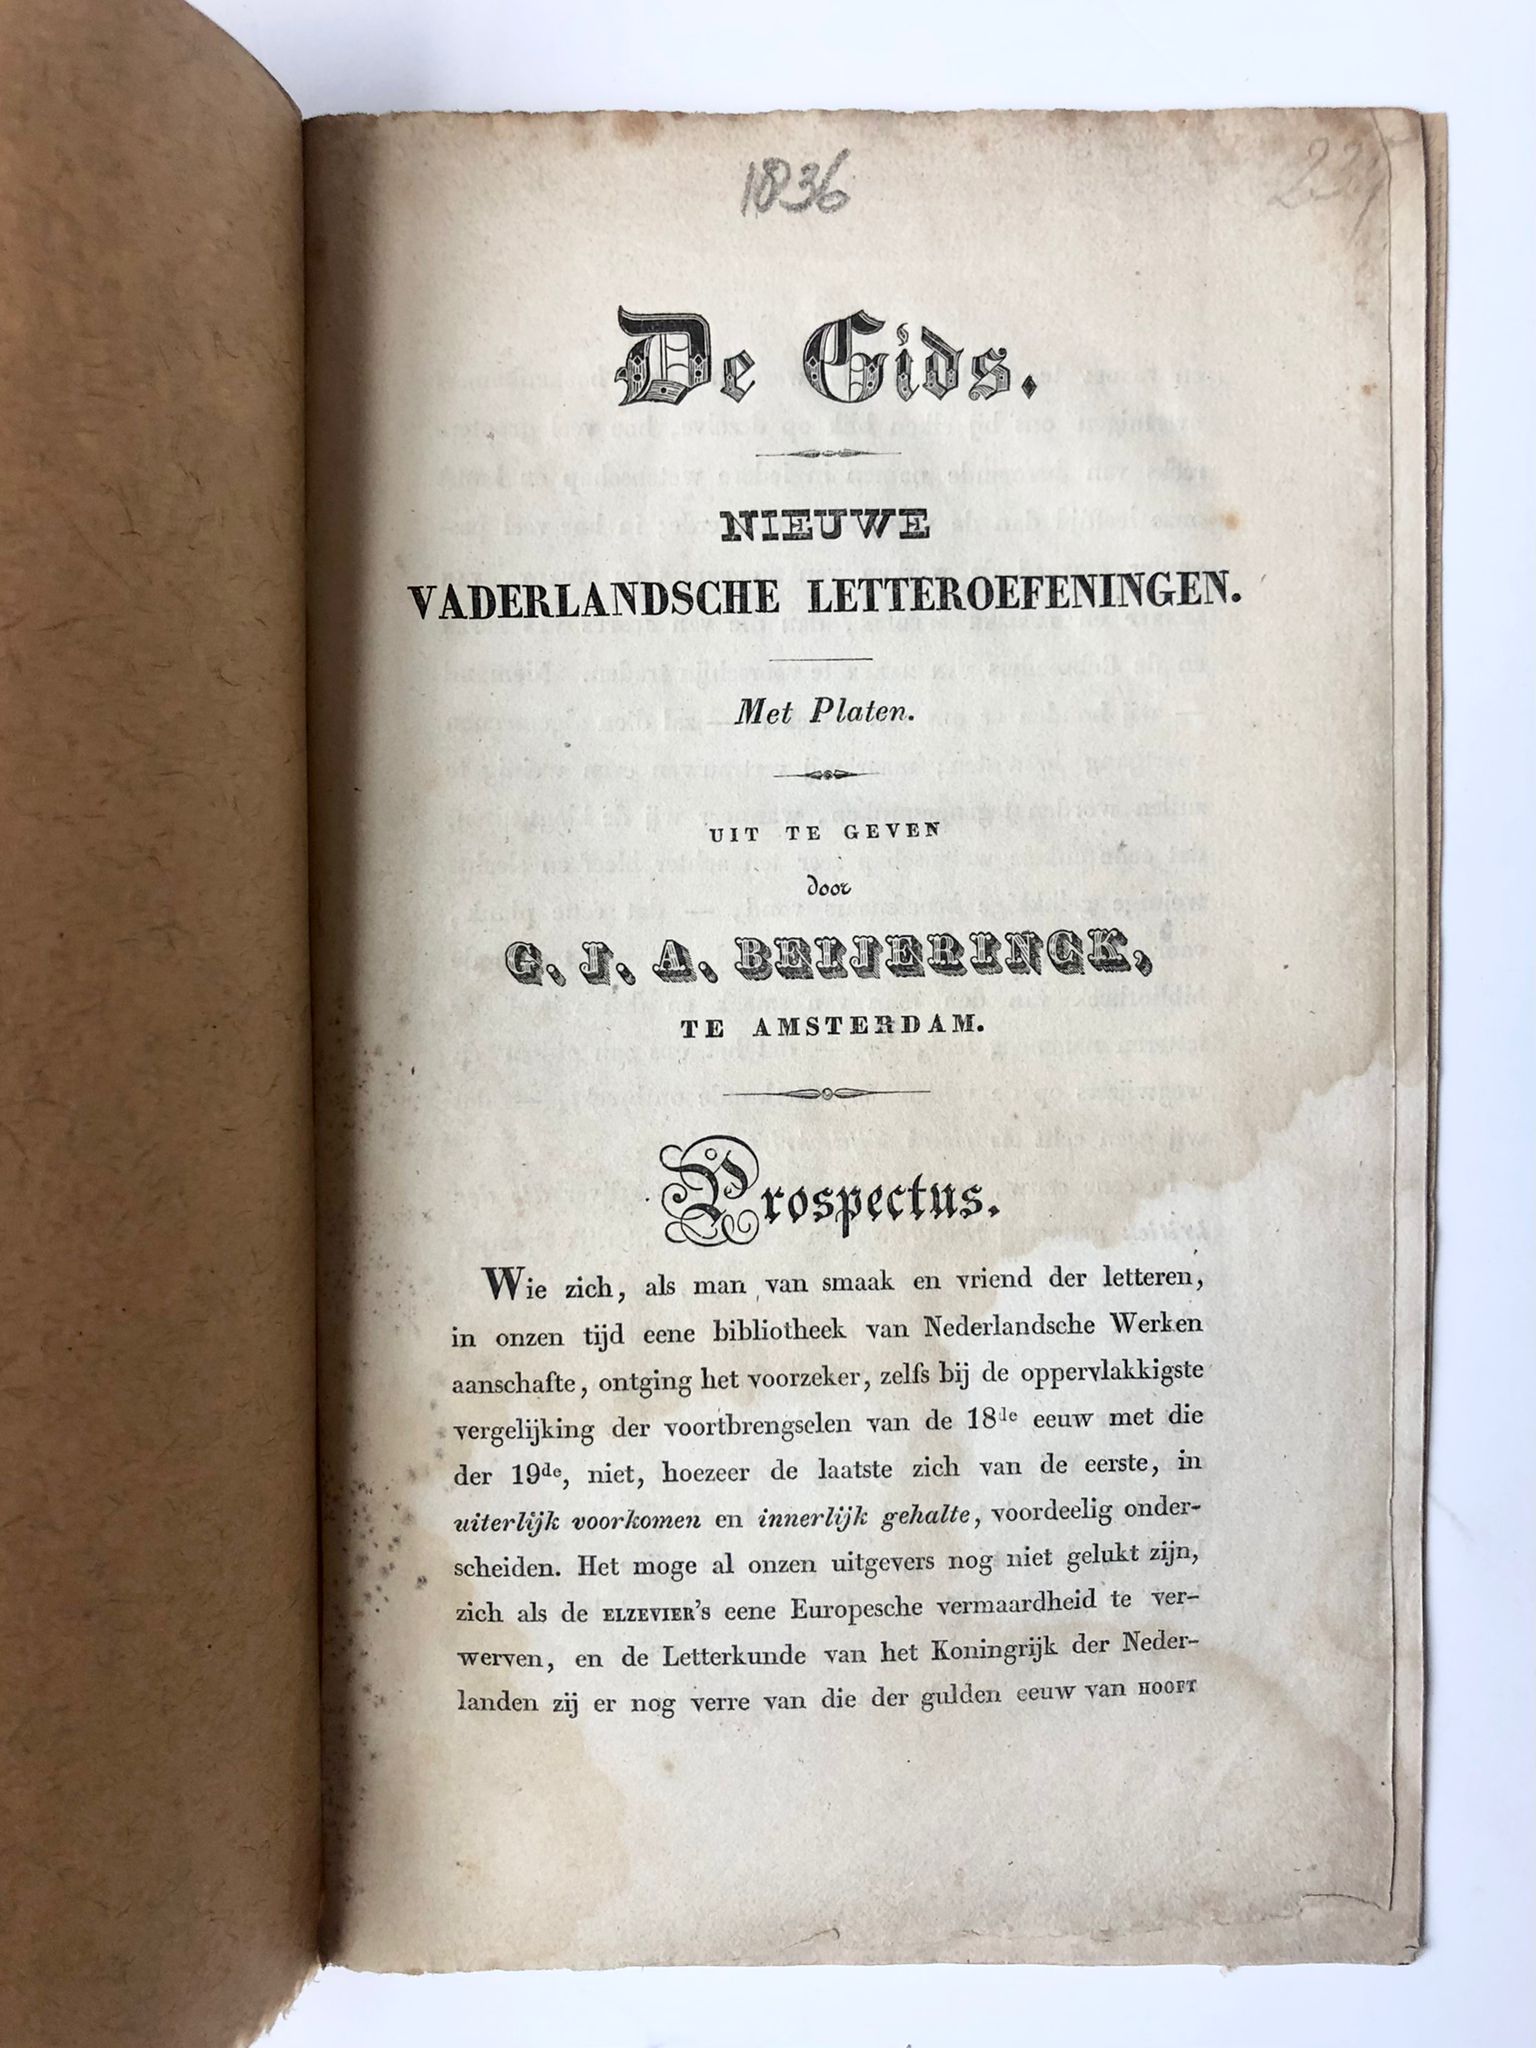 [Literature, 1836] Prospectus 'De Gids'. Nieuwe Vaderlandsche Letteroefeningen, uit te geven door G.J.A. Beijerinck te Amsterdam. Amsterdam, 1836, 8°, 12 pp.